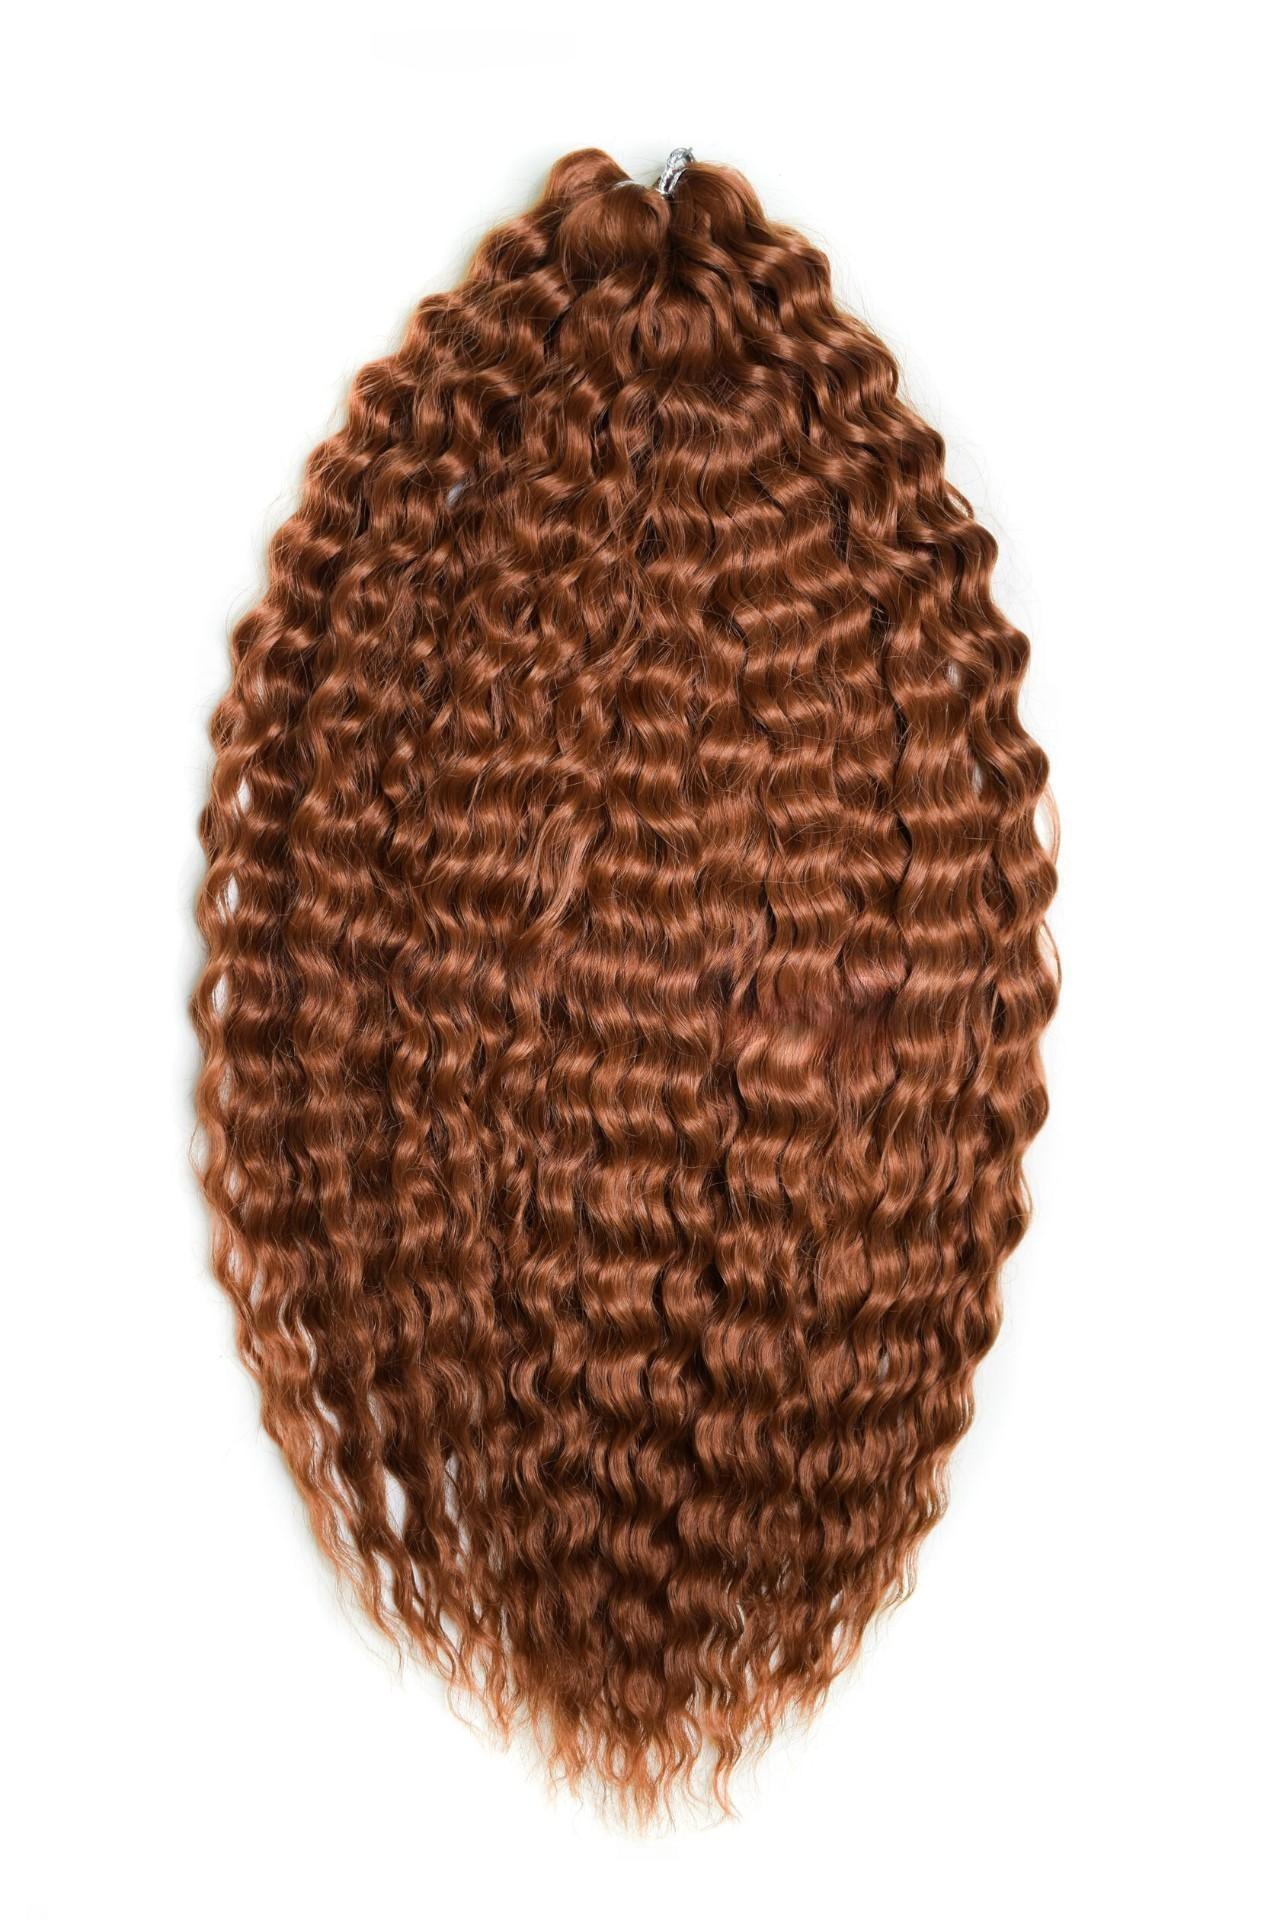 Афрокудри для плетения волос Ariel цвет 30 каштановый длина 60см вес 300г